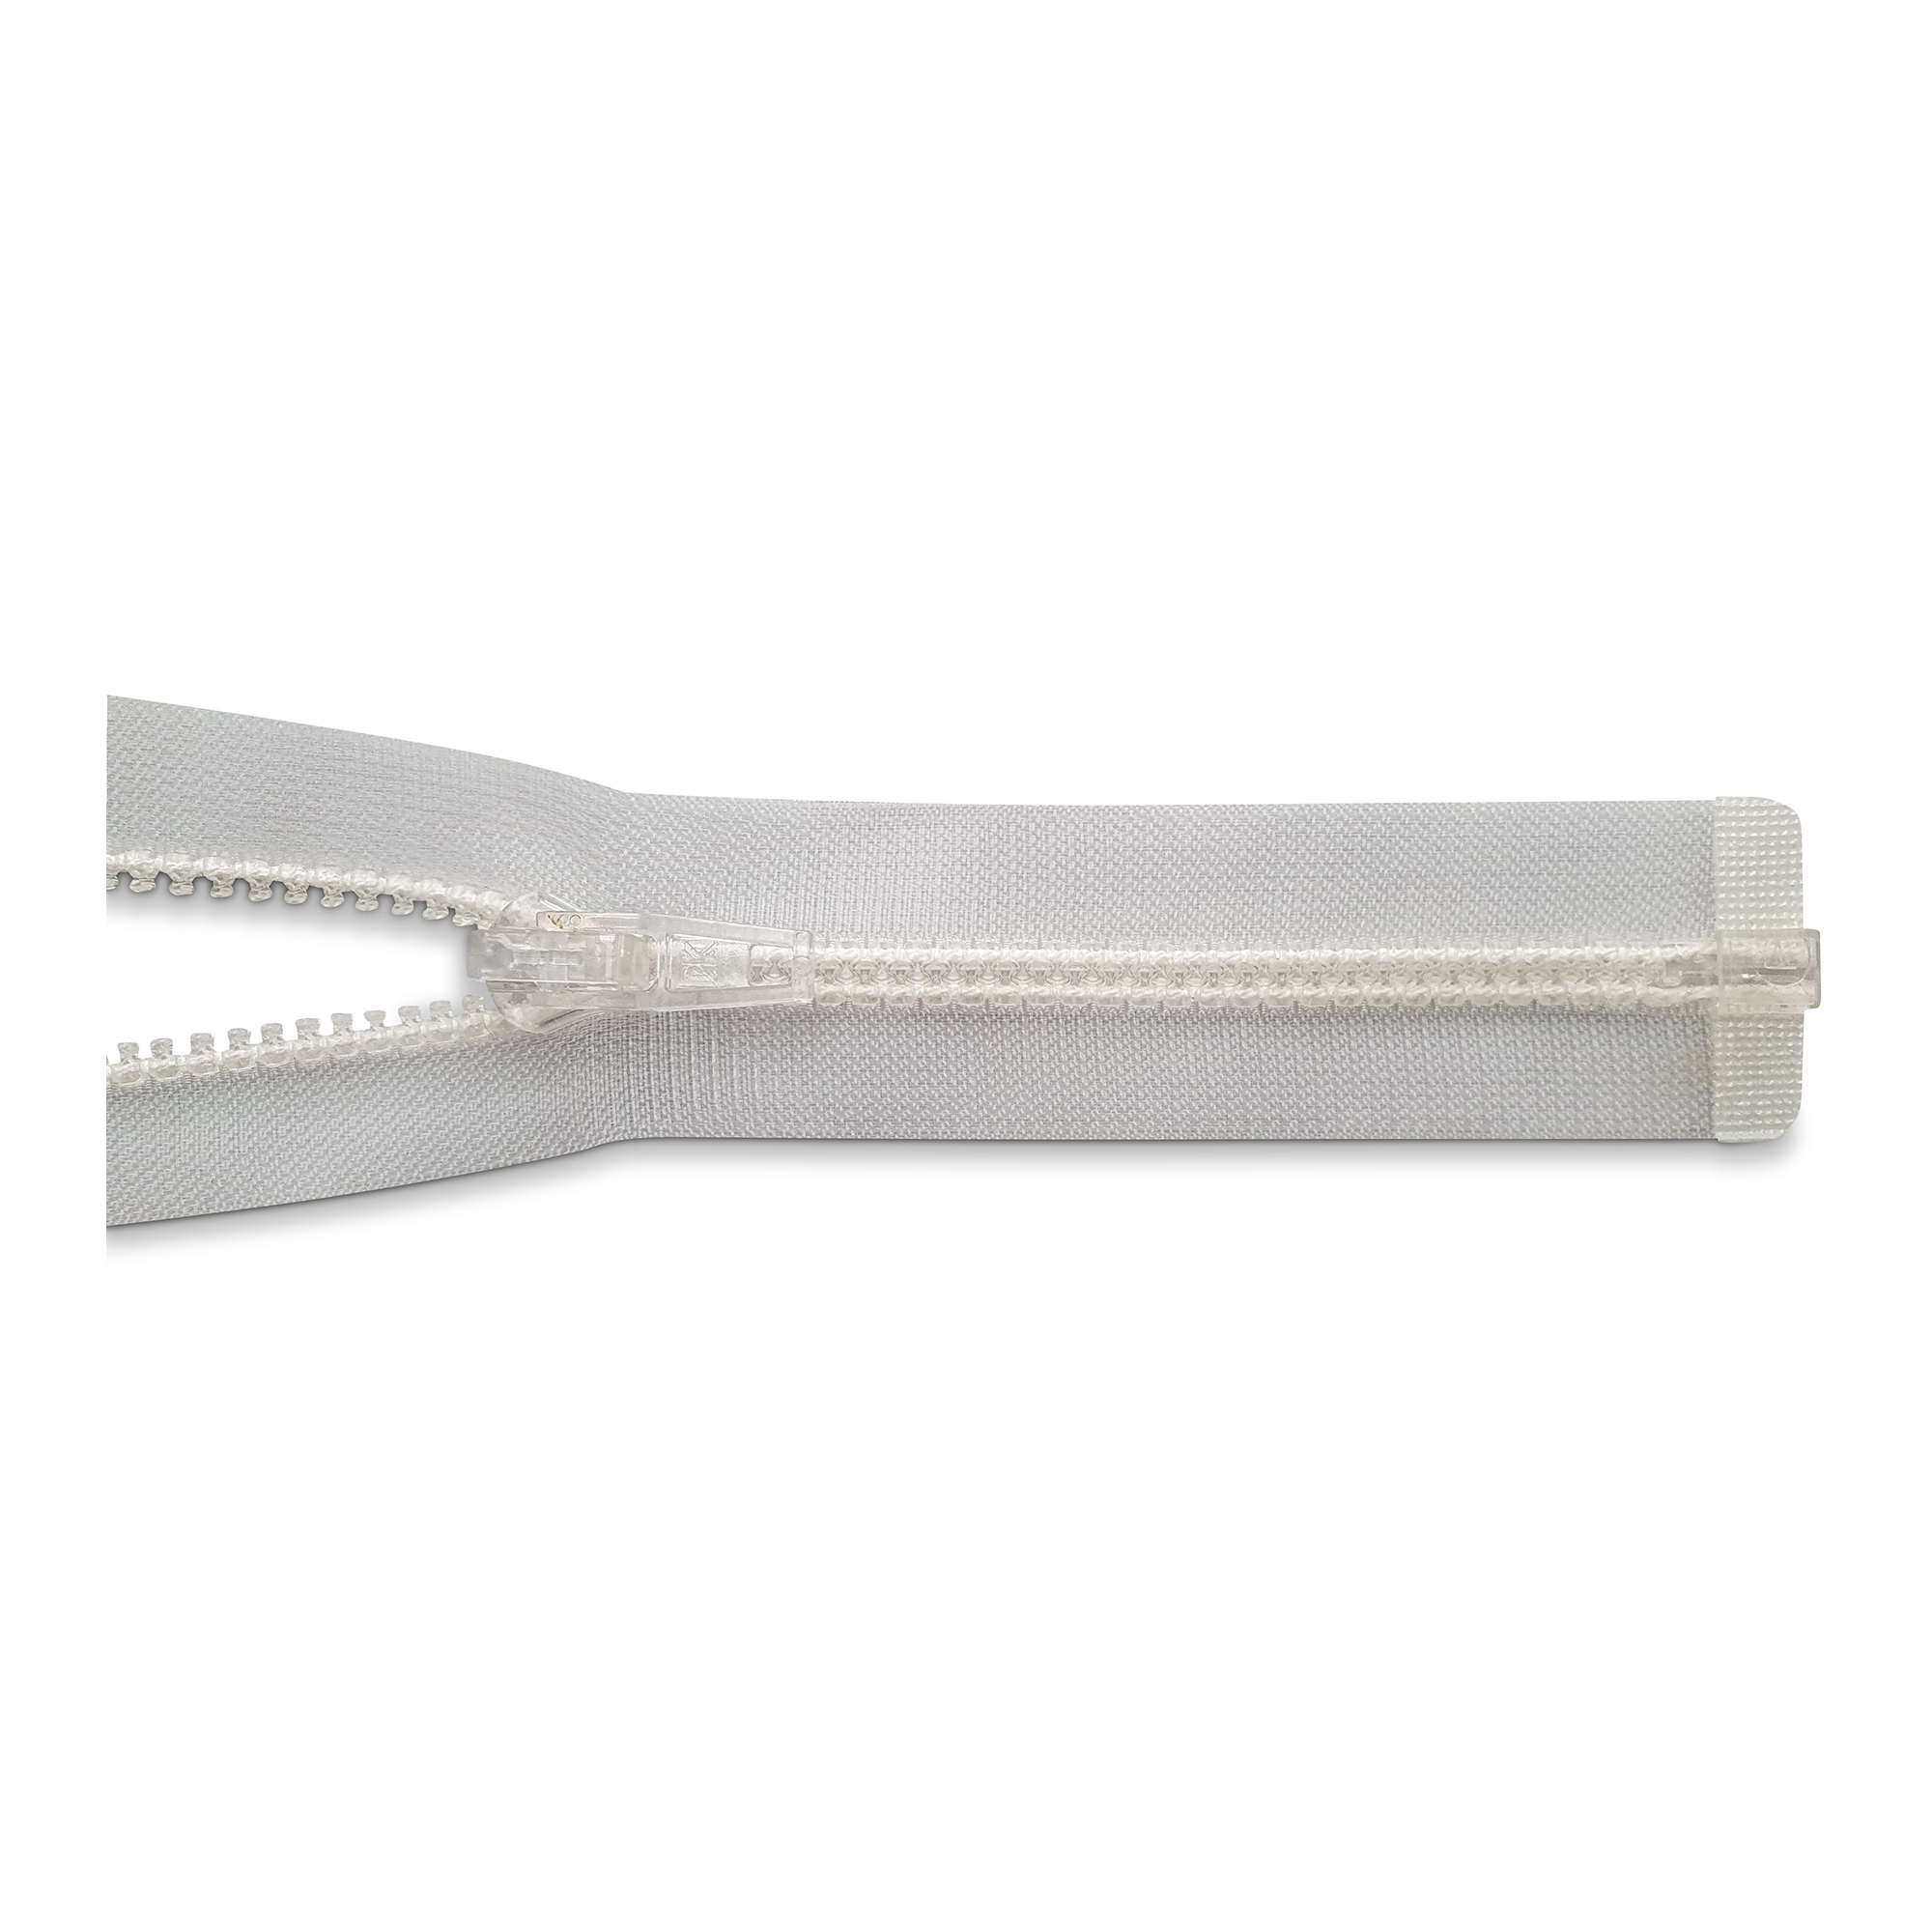 Reißverschluss 100cm, teilbar, Kstoff Zähne breit, transparent, hochwertiger Marken-Reißverschluss von Rubi/Barcelona